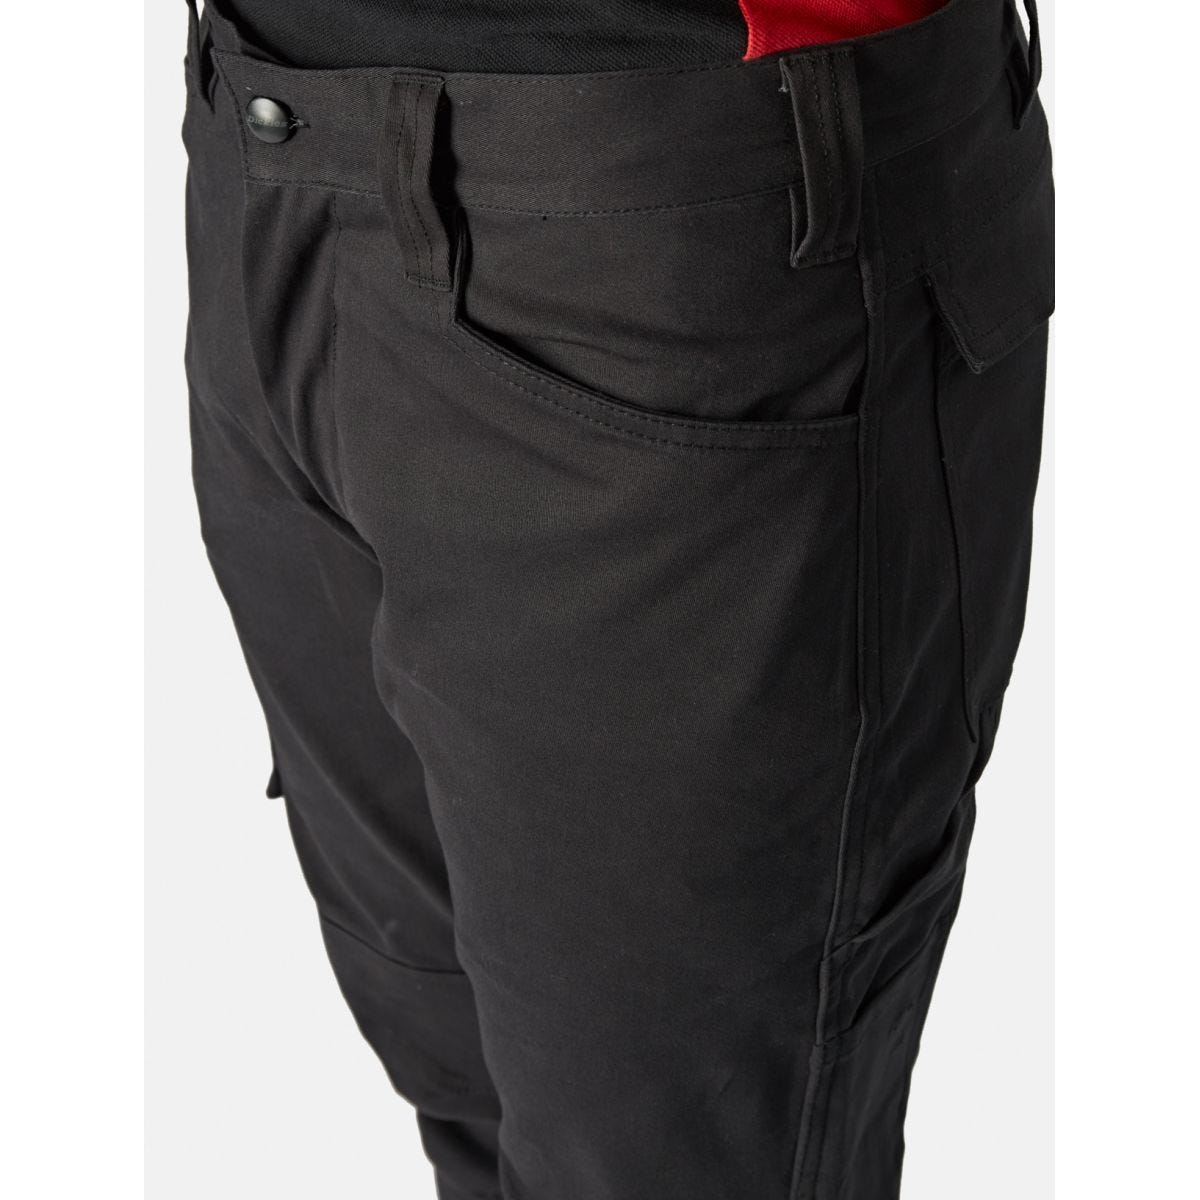 Pantalon Lead In Flex Noir - Dickies - Taille 48 3